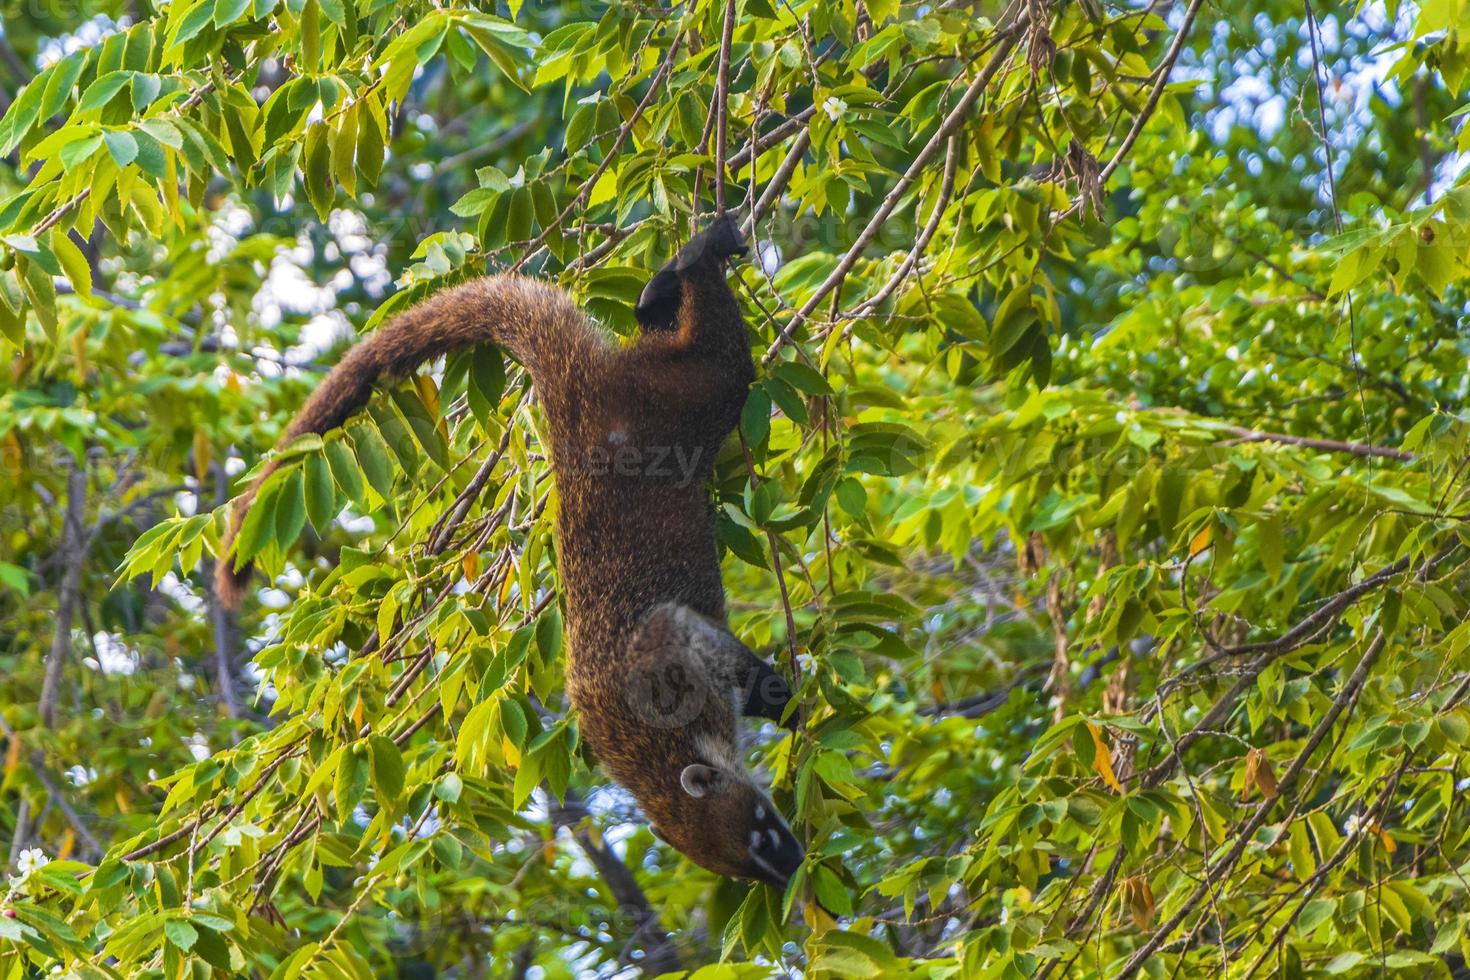 coati scalata alberi rami e ricerca frutta tropicale giungla Messico. foto